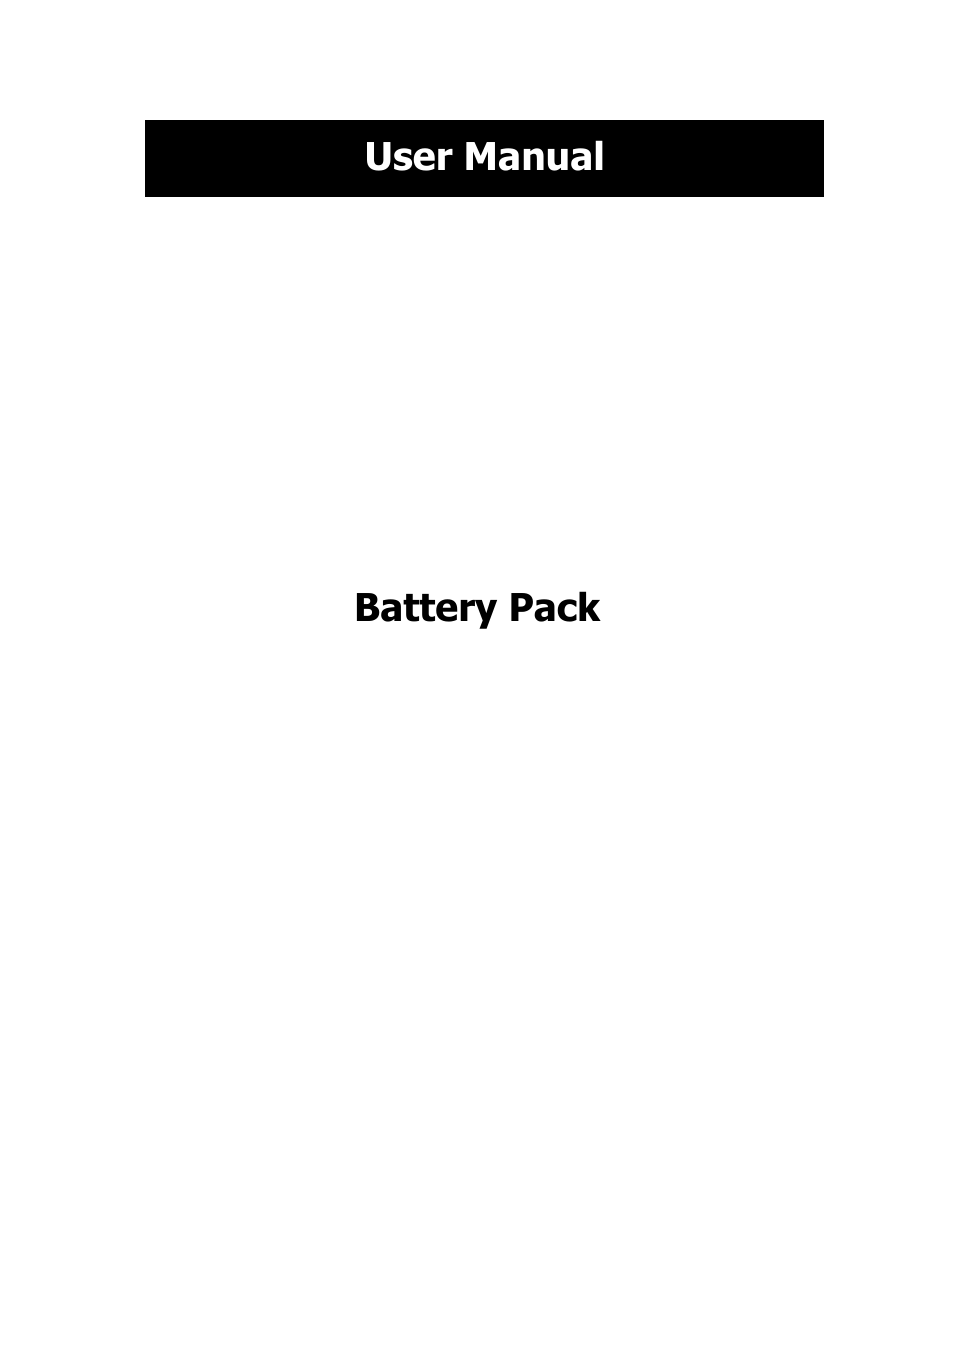 Battery Pack for VFI 1000_1500 LCD